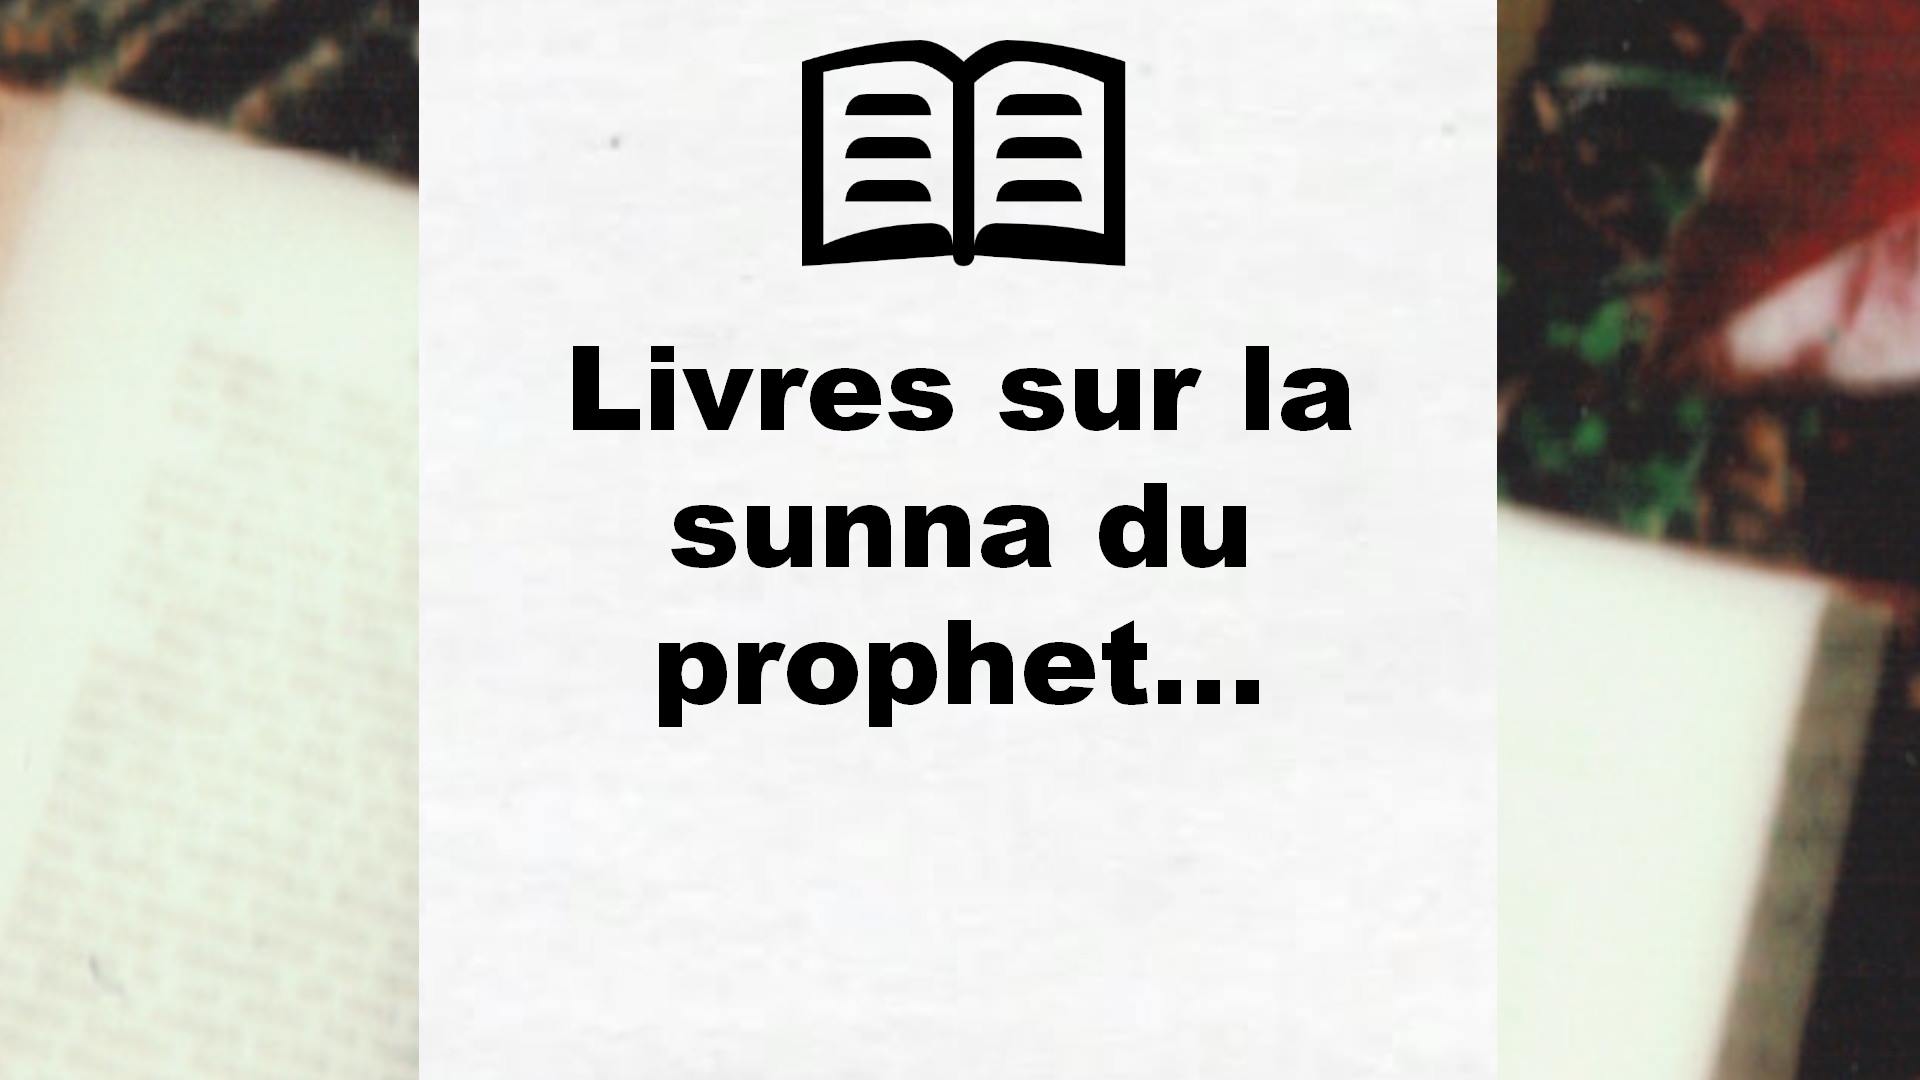 Livres sur la sunna du prophete